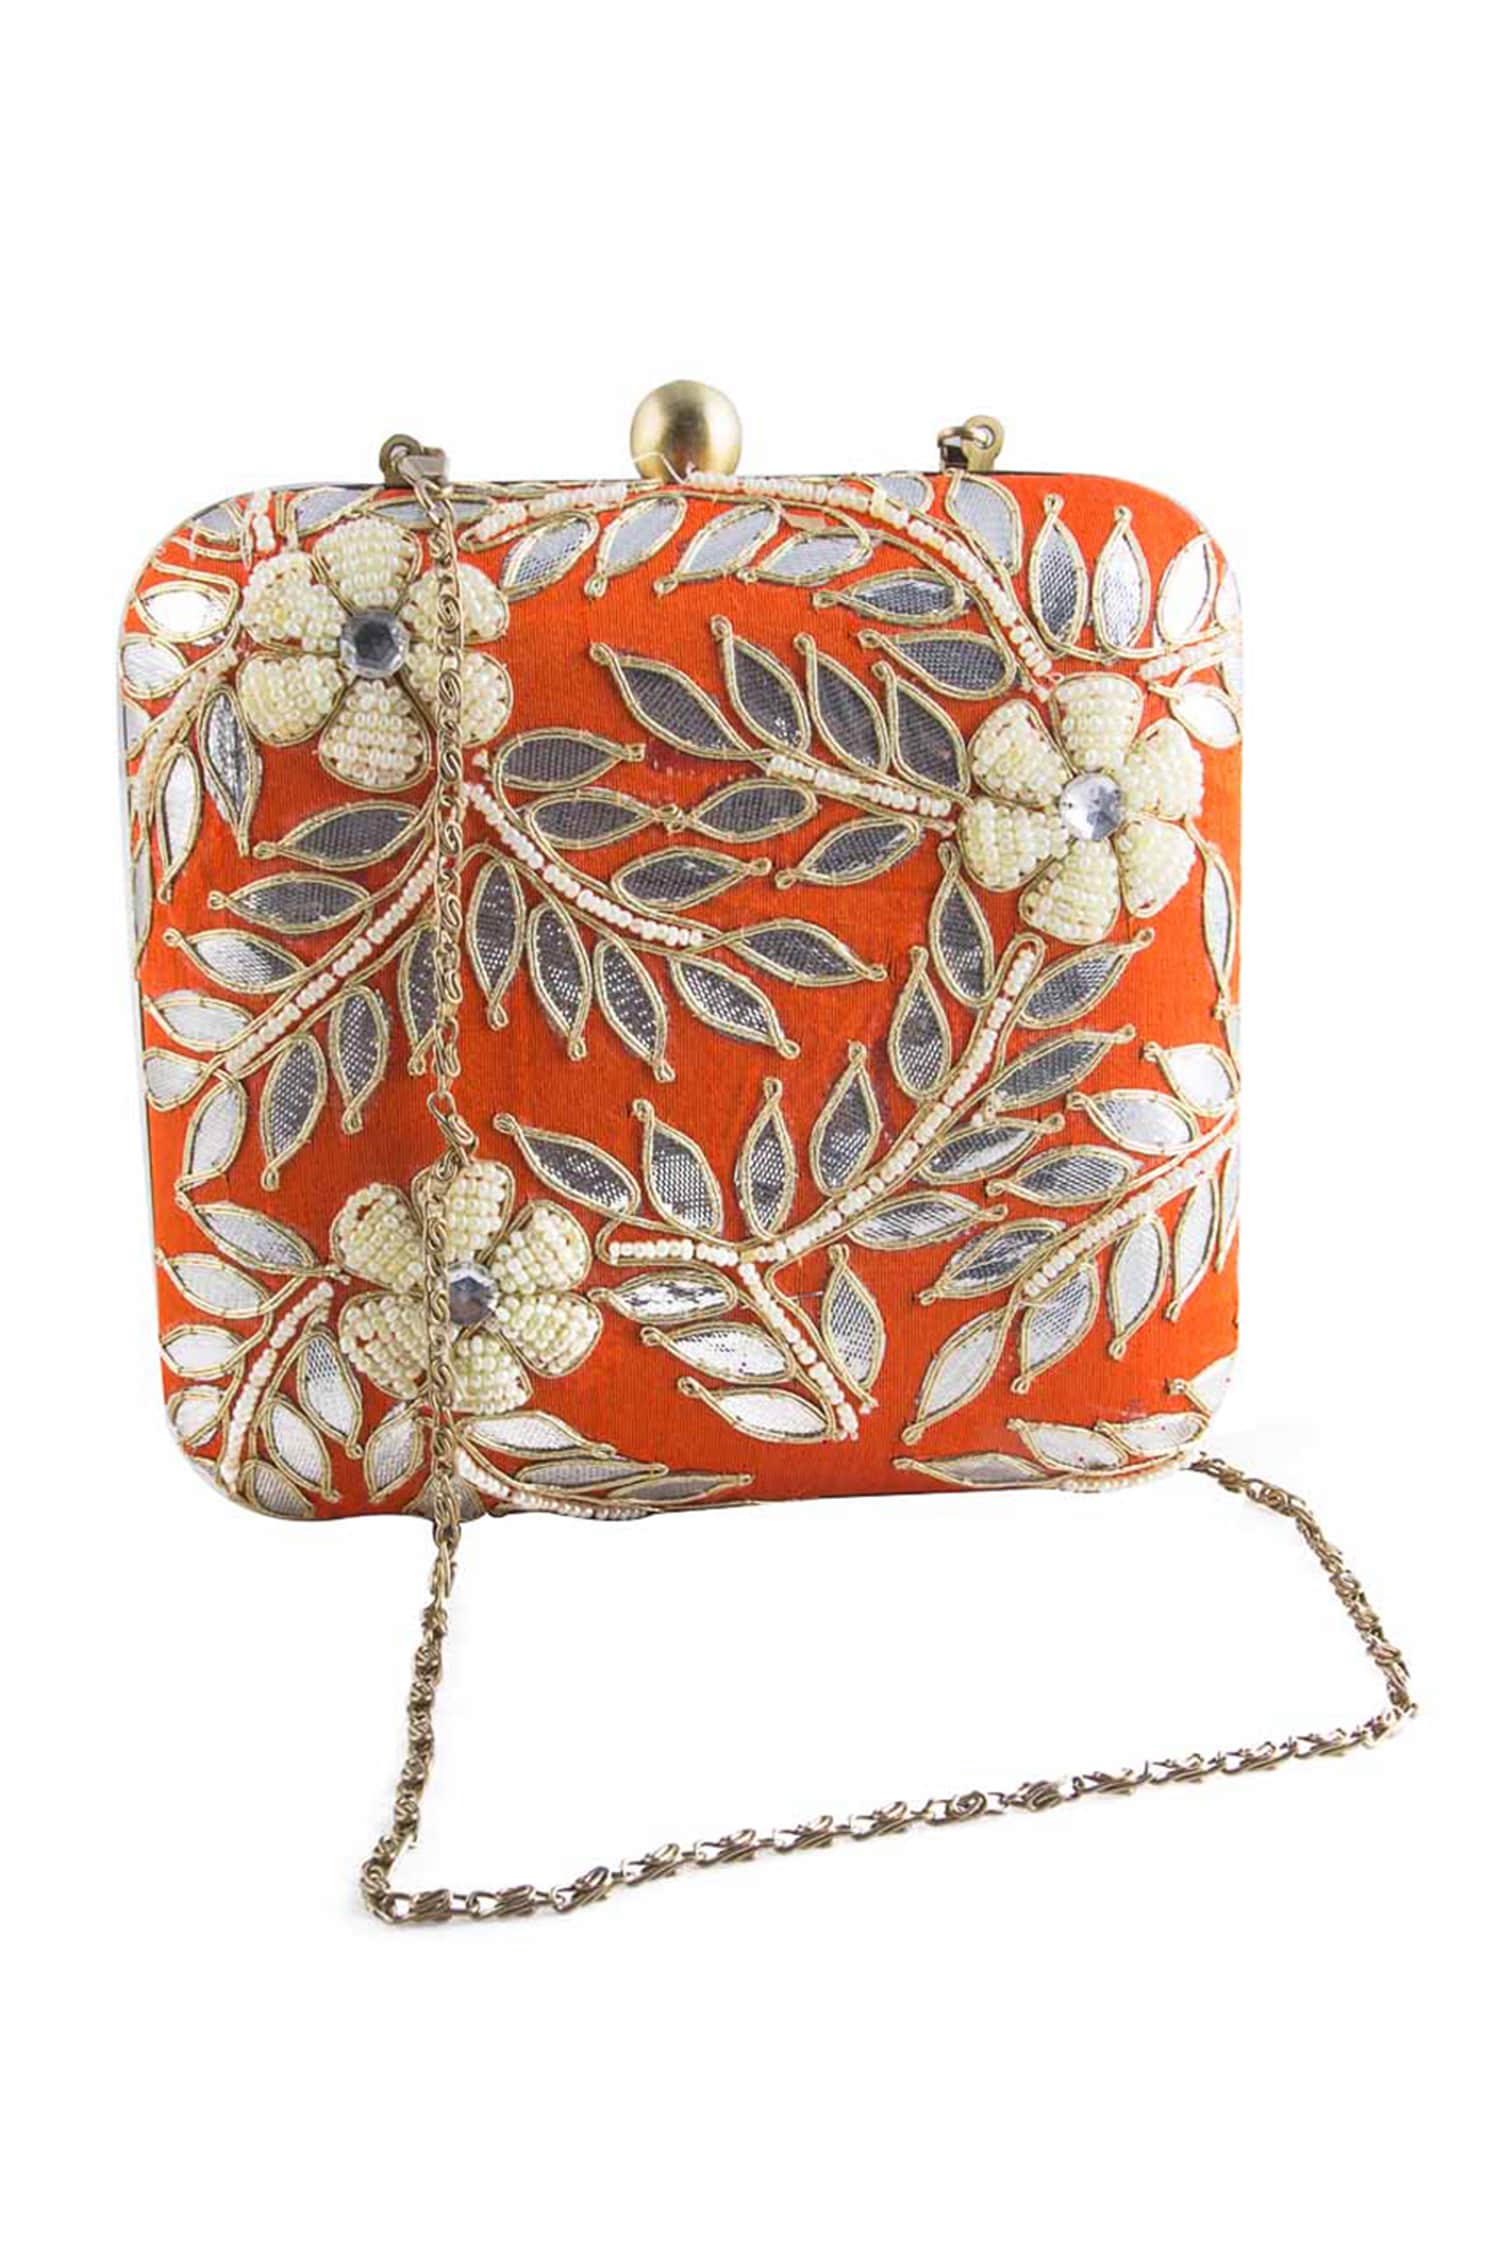 Pochette burnt orange metal O bag purse | Make your own item | O bag